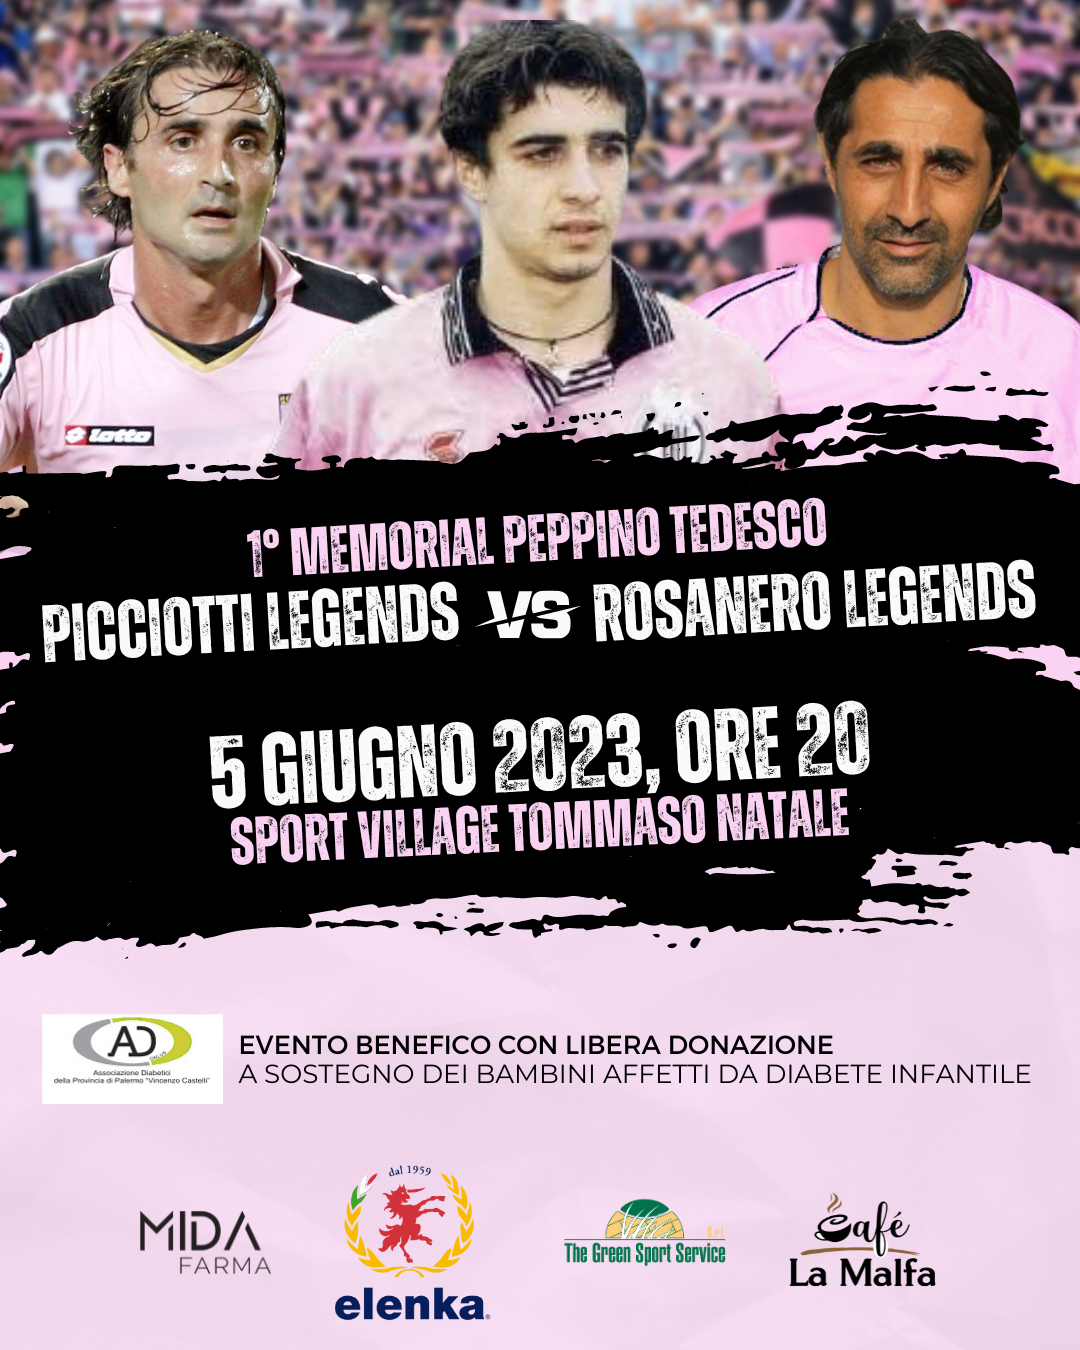 Peppino Tedesco Memorial: Benefizspiel zwischen Picciotti und Rosanero Legends